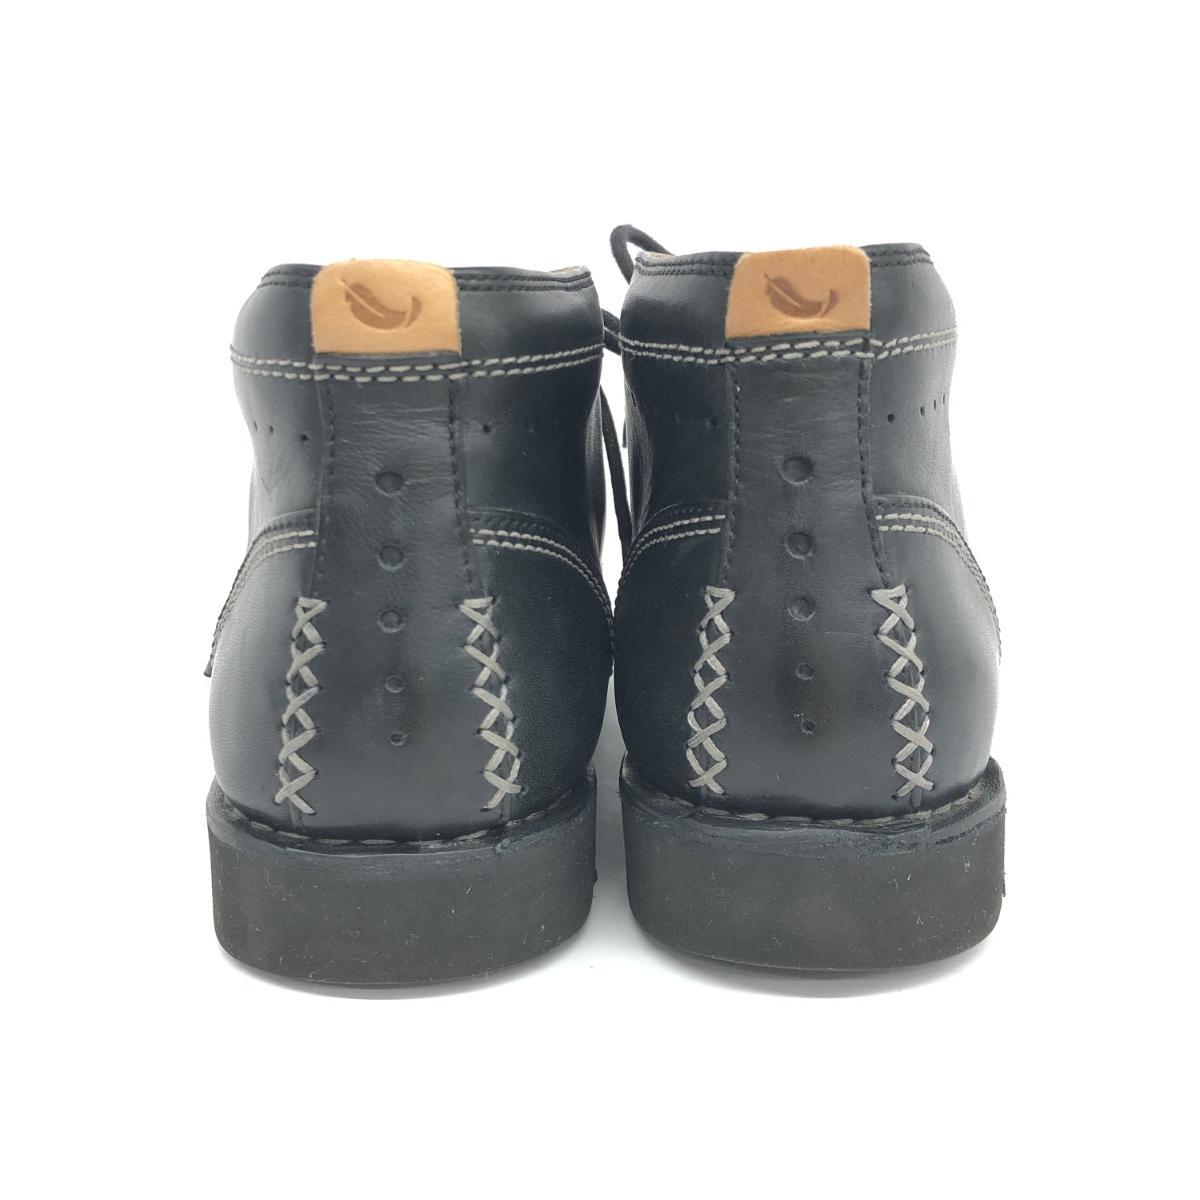 ◆Clarks クラークス ブーツ UK5.5◆ ブラック レザー レディース 靴 シューズ ブーティー boots_画像4